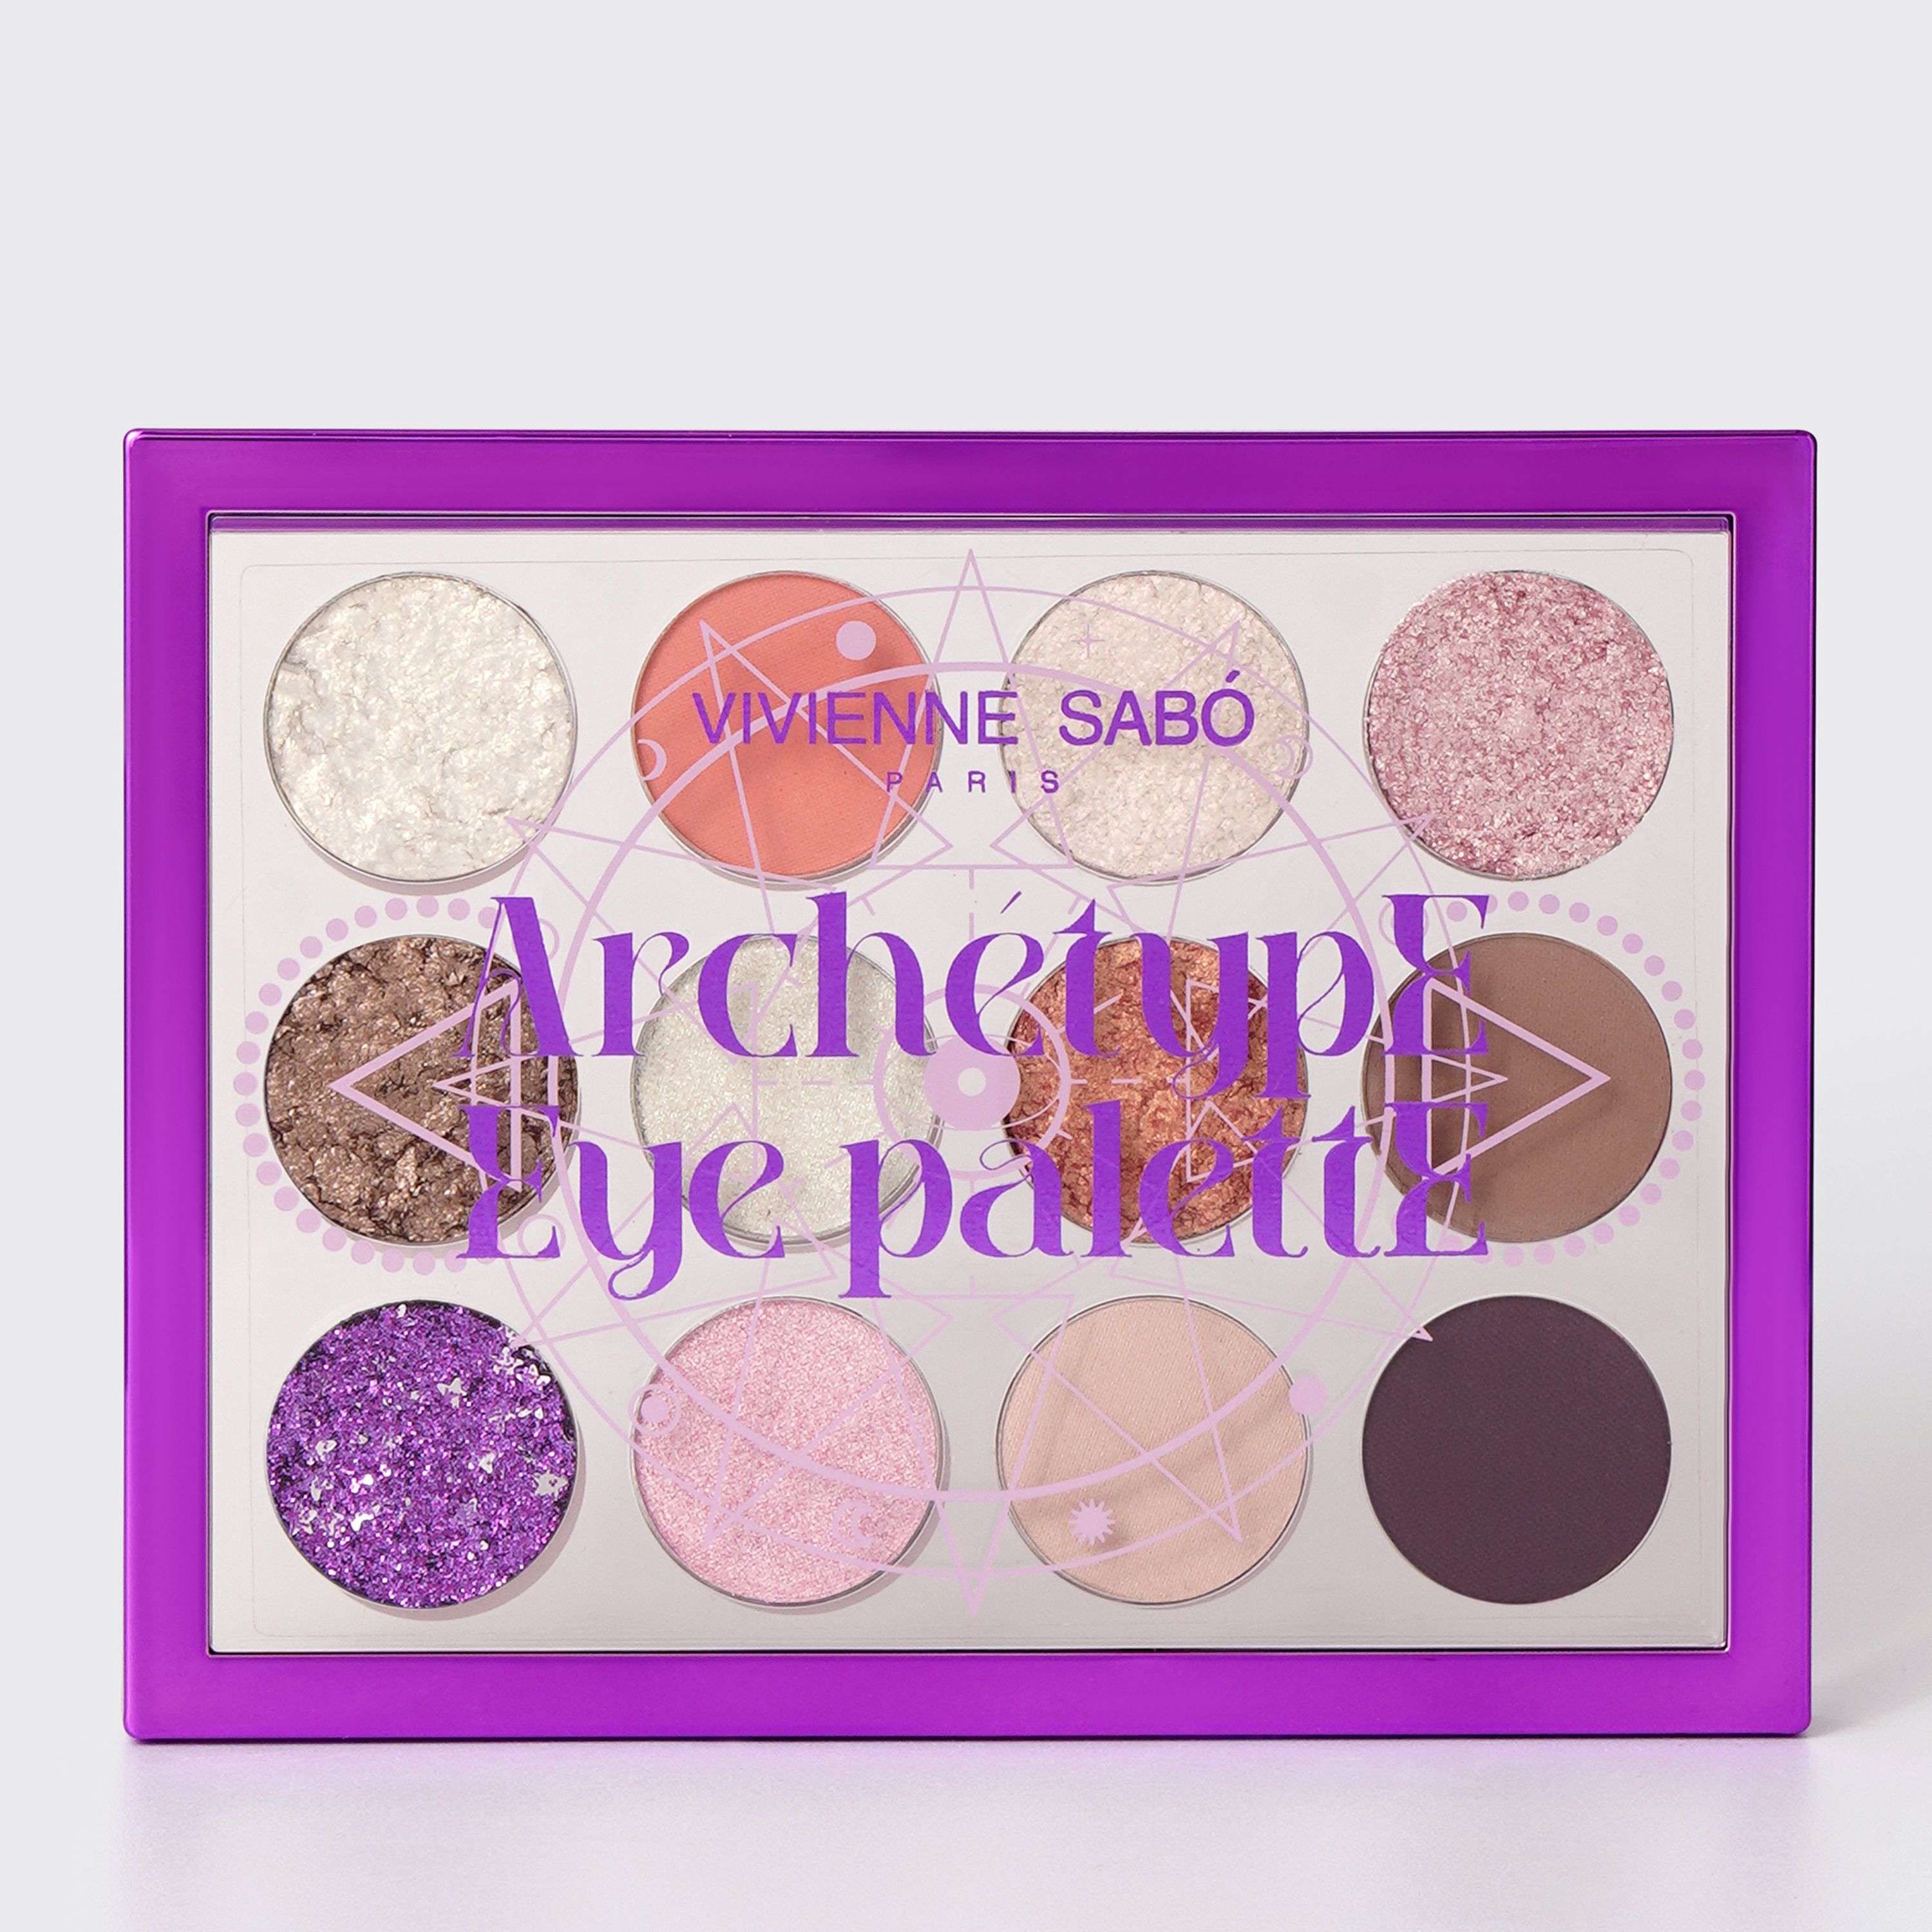 Vivienne Sabo - Eyeshadow Palette "Archetype Eye Palette" - Rituel Ésotérique